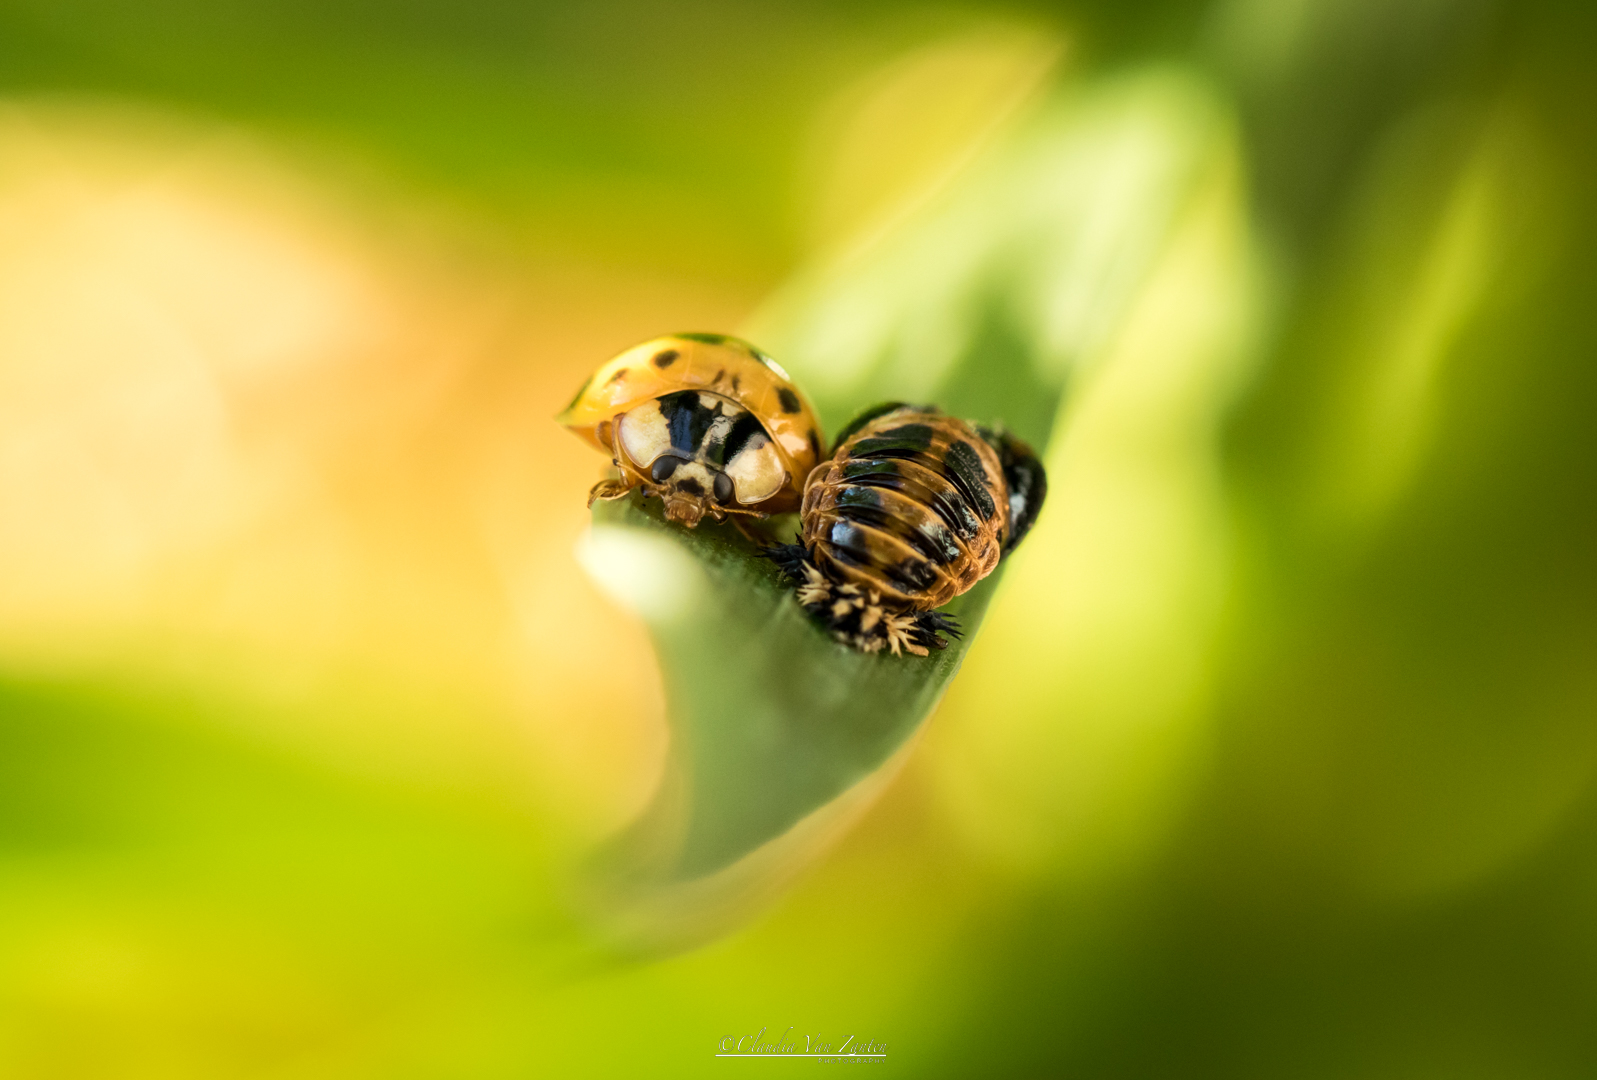 Project Ladybug - Blijf dichtbij